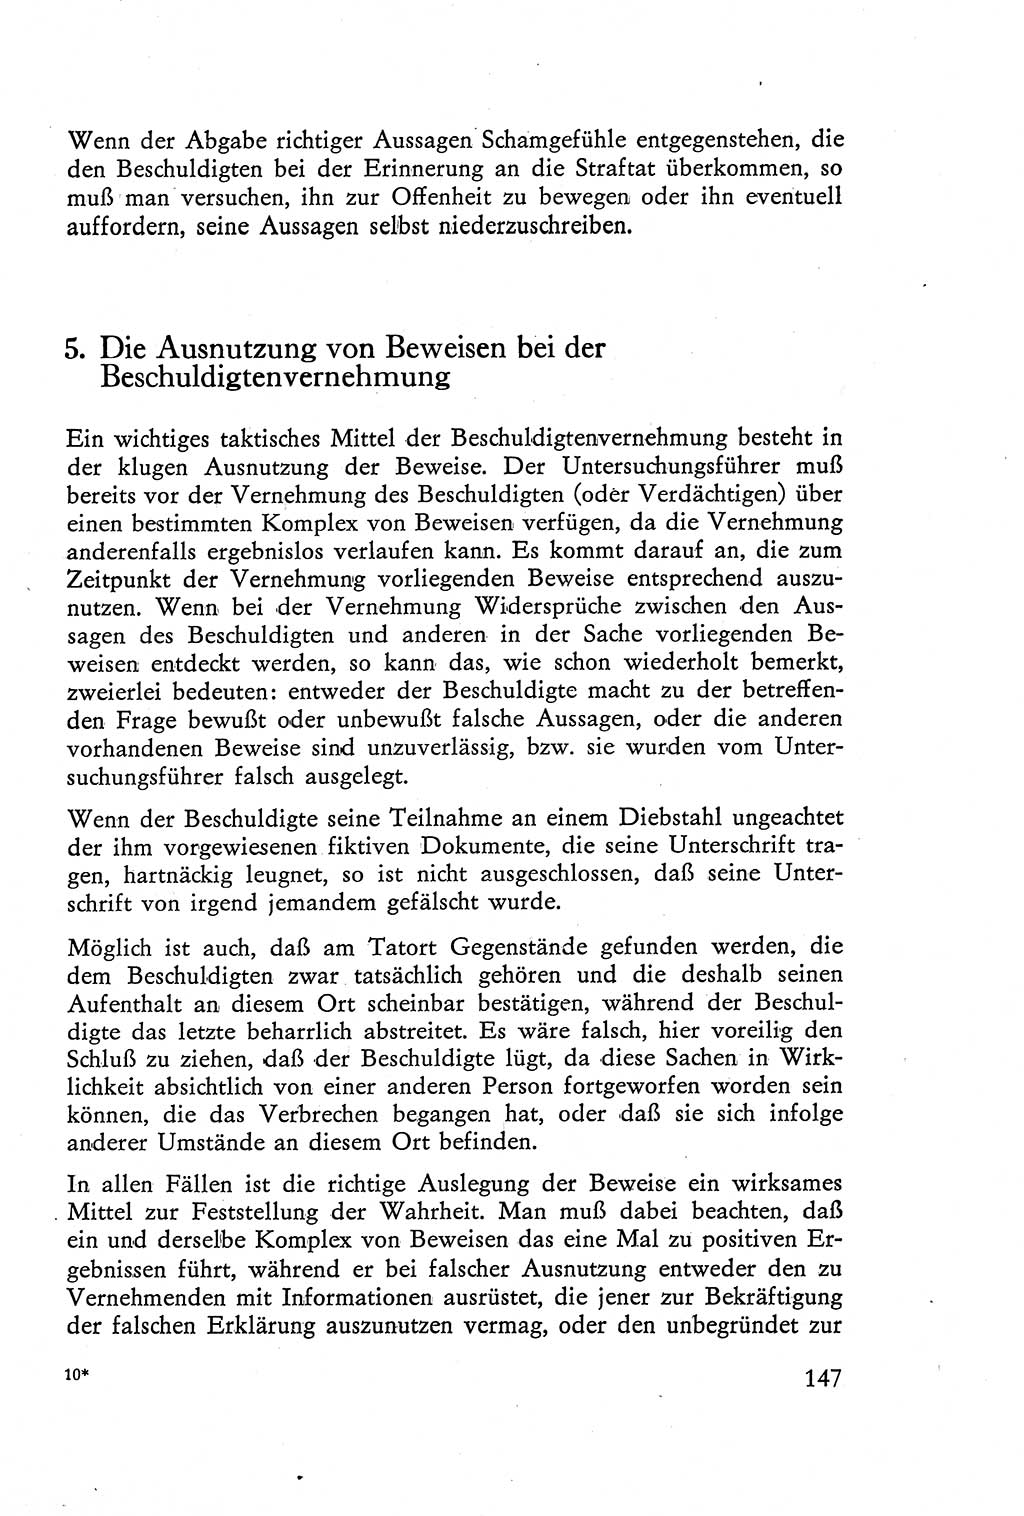 Die Vernehmung [Deutsche Demokratische Republik (DDR)] 1960, Seite 147 (Vern. DDR 1960, S. 147)